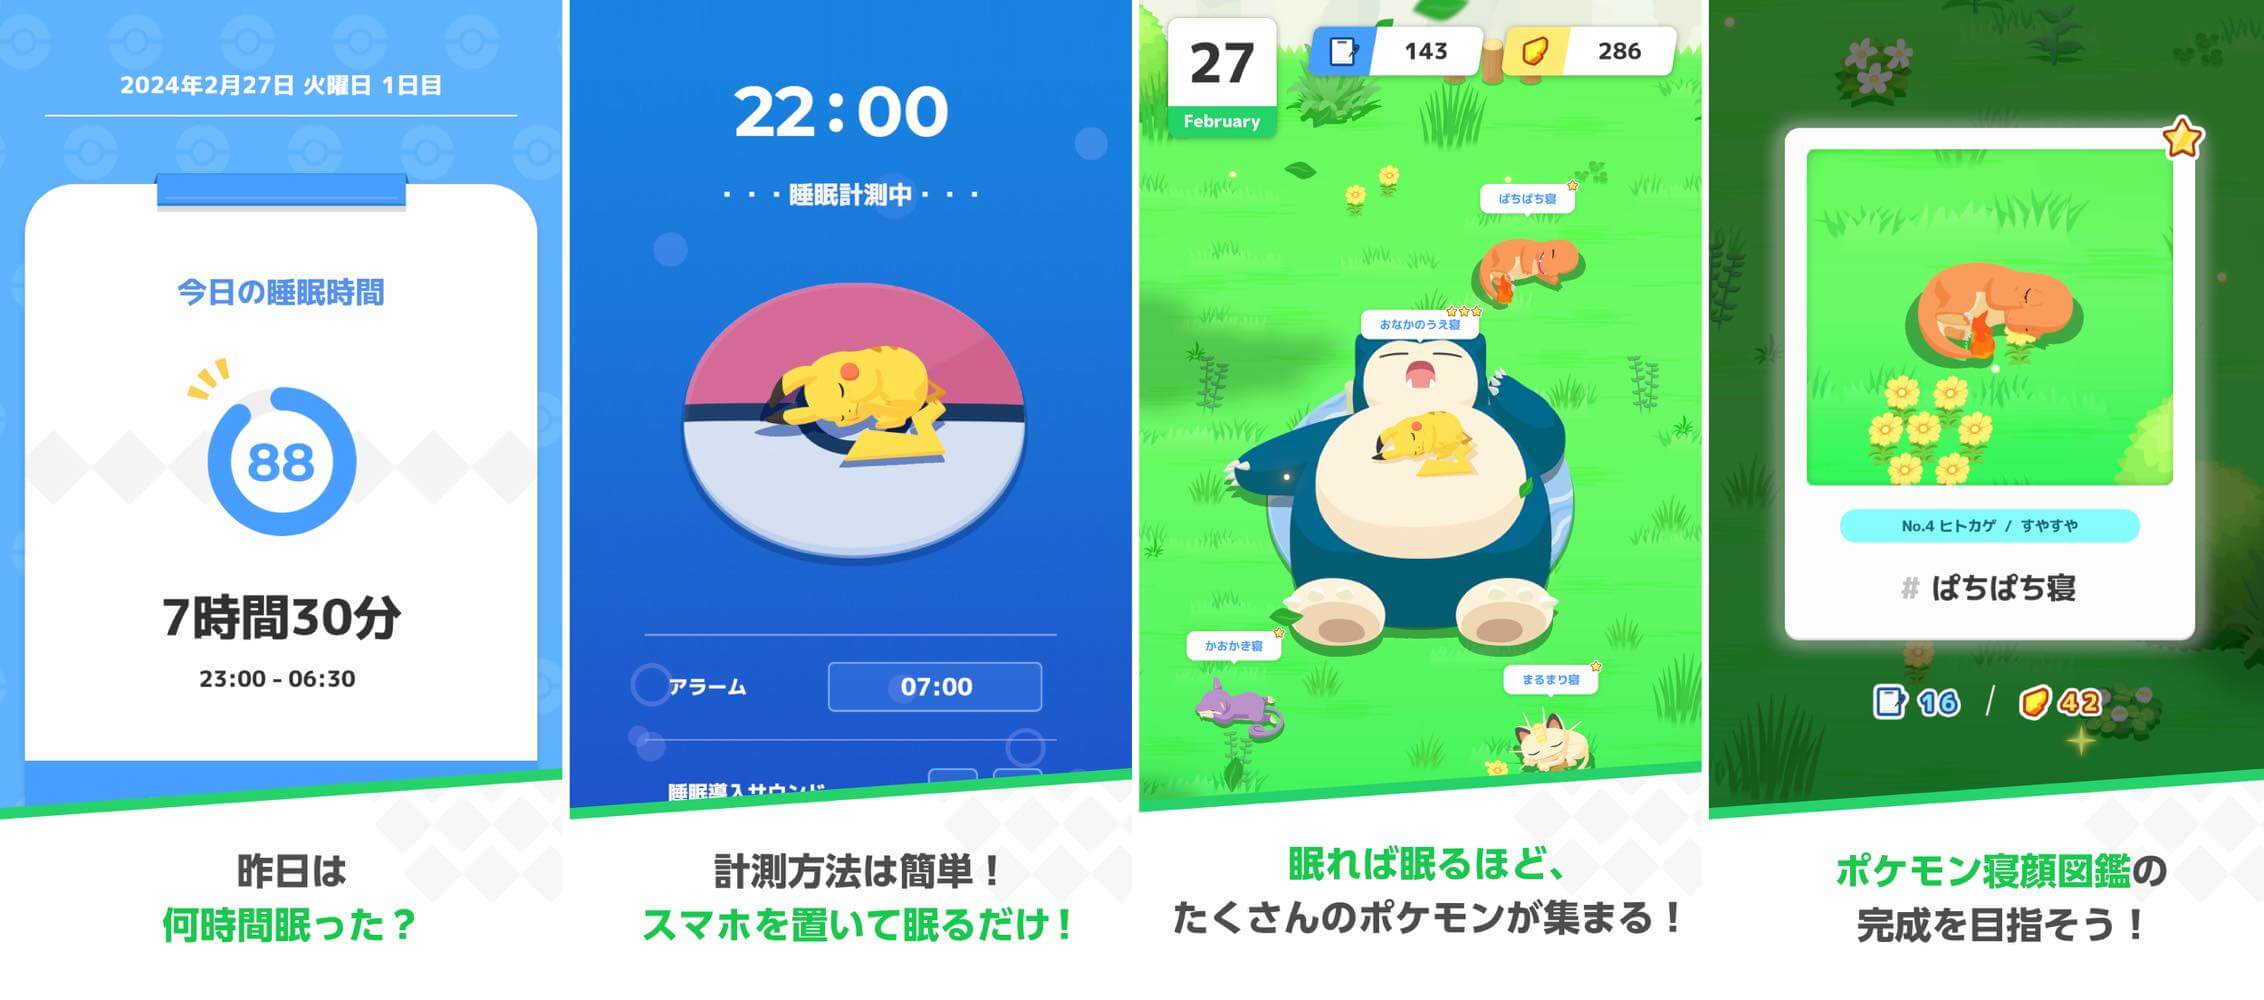 睡眠でポケモンの寝顔を集めるスマホアプリ｢Pokémon Sleep｣は明日から配信開始